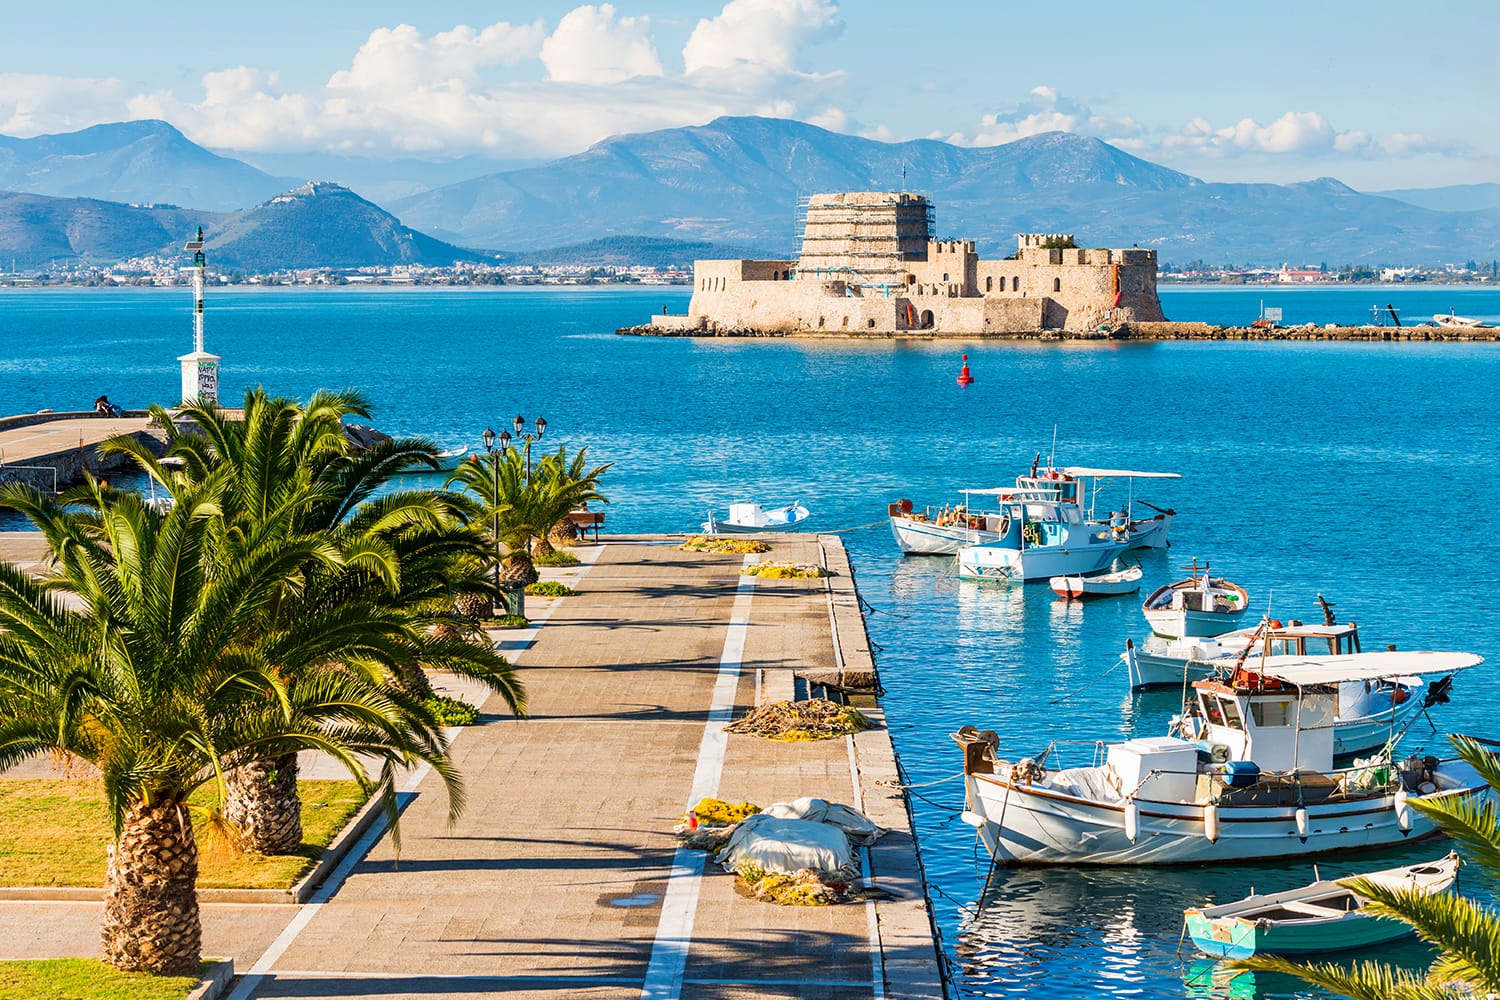 Όμορφο λιμάνι της πόλης του Ναυπλίου στην Ελλάδα με τις μικρές βάρκες, τους φοίνικες και το κάστρο Μπούρτζι στο νερό